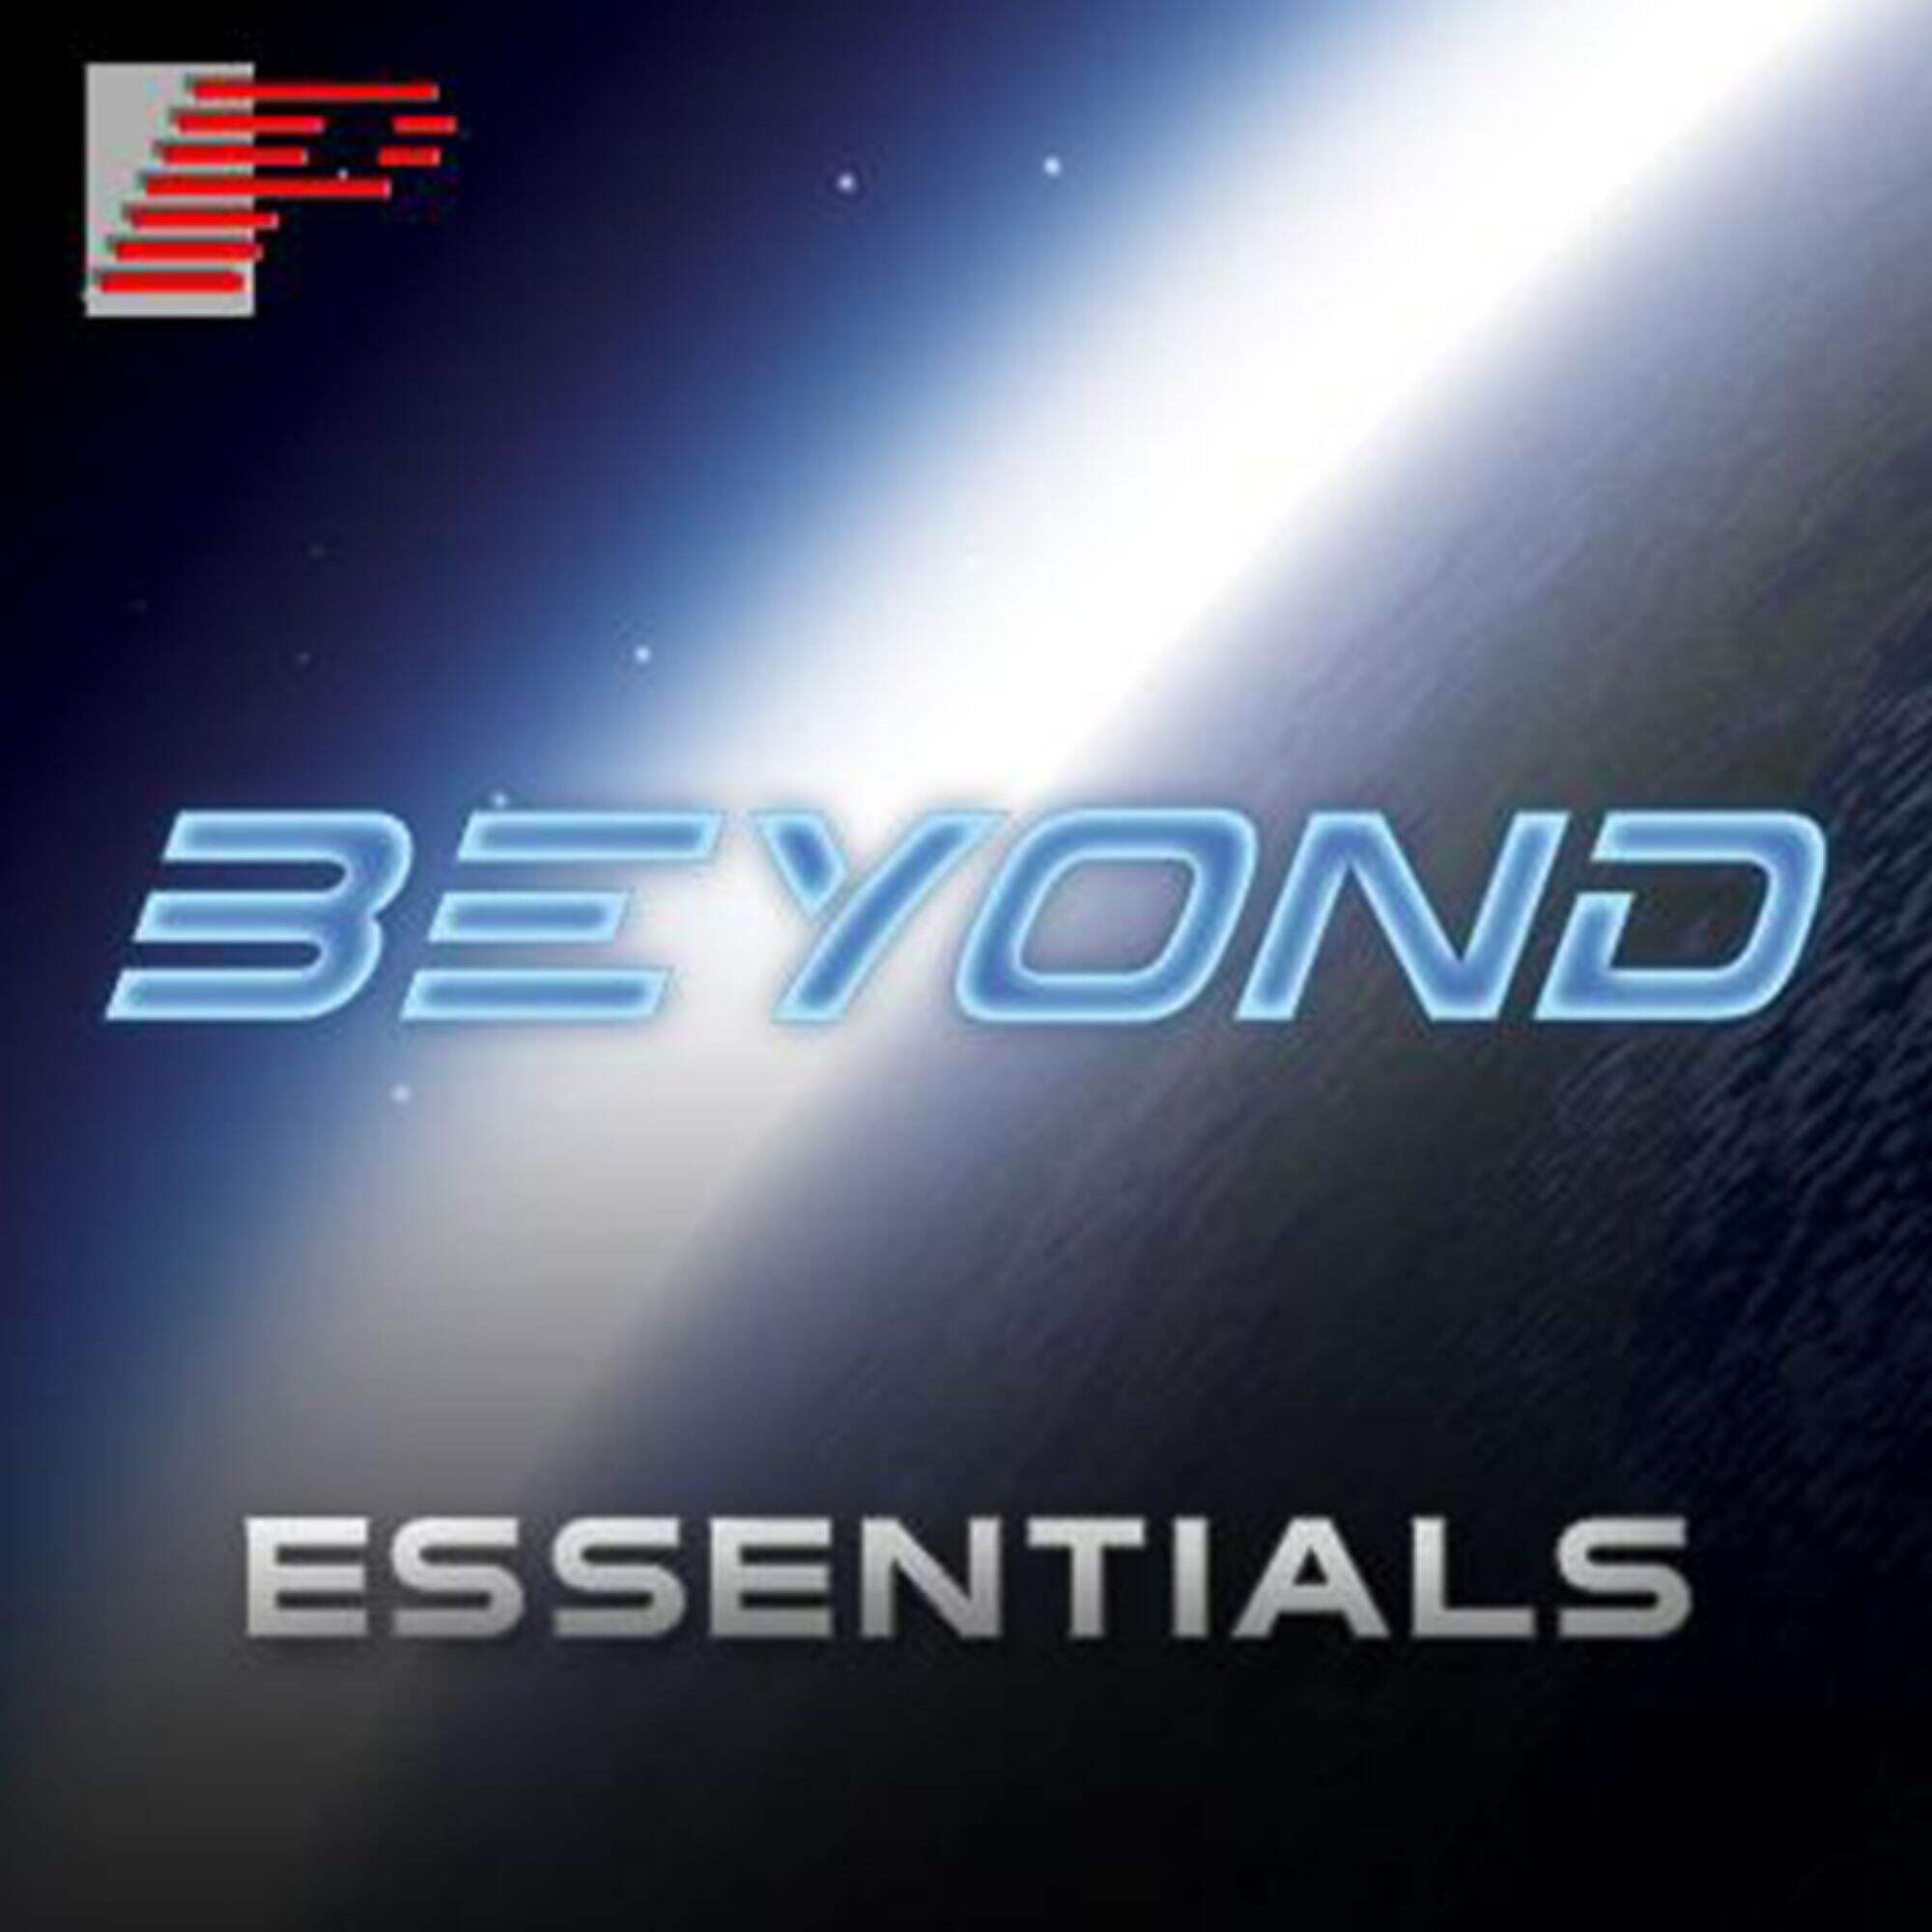 BEYOND Essentials License